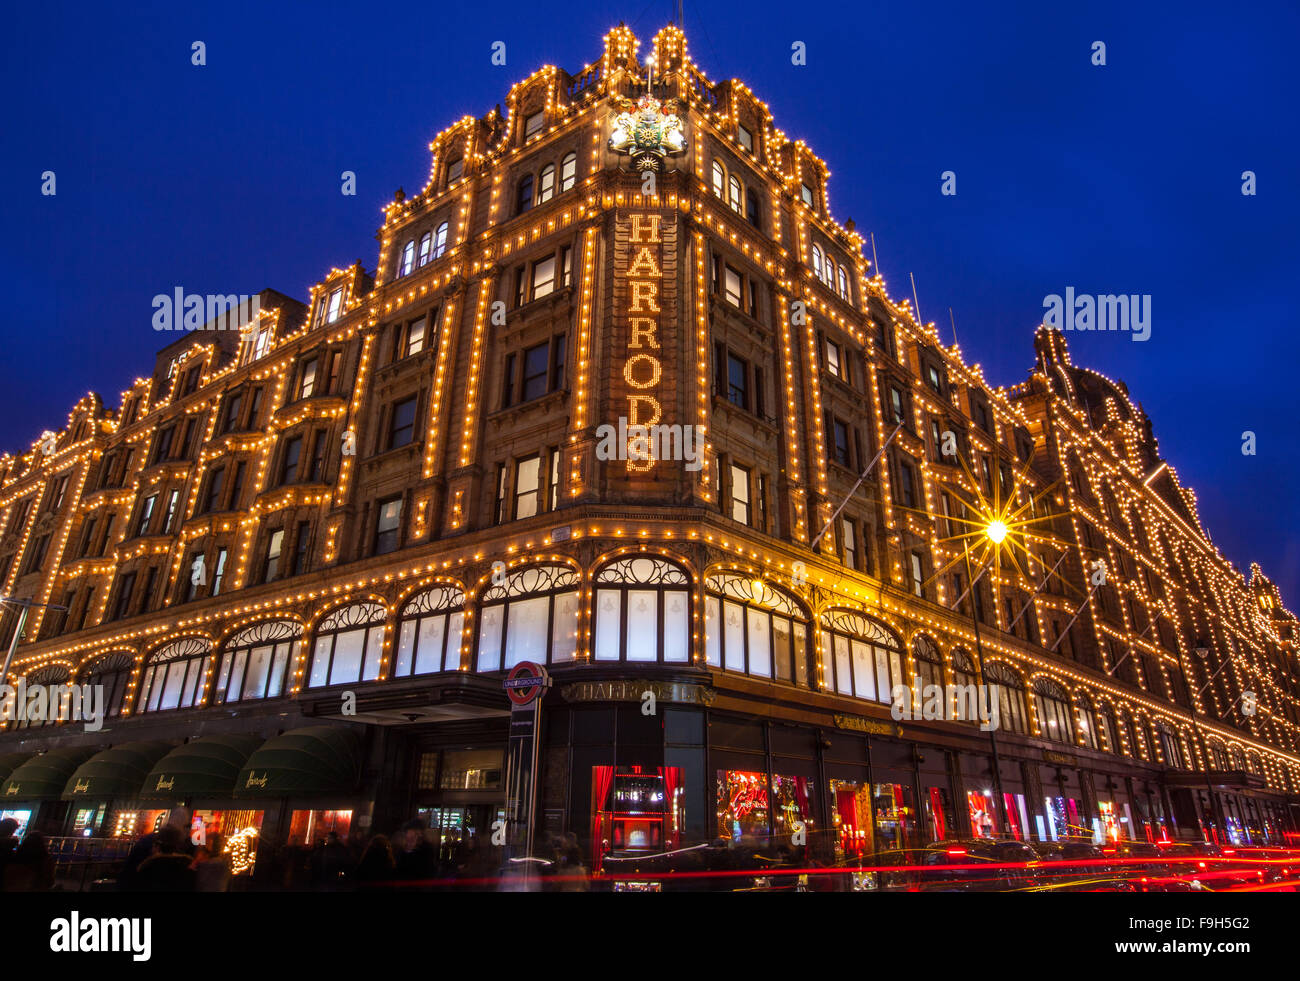 Londres, Reino Unido - 16 DE DICIEMBRE 2015: Una vista de la famosa tienda Harrods en Londres, el 16 de diciembre de 2015. El Harrods br Foto de stock